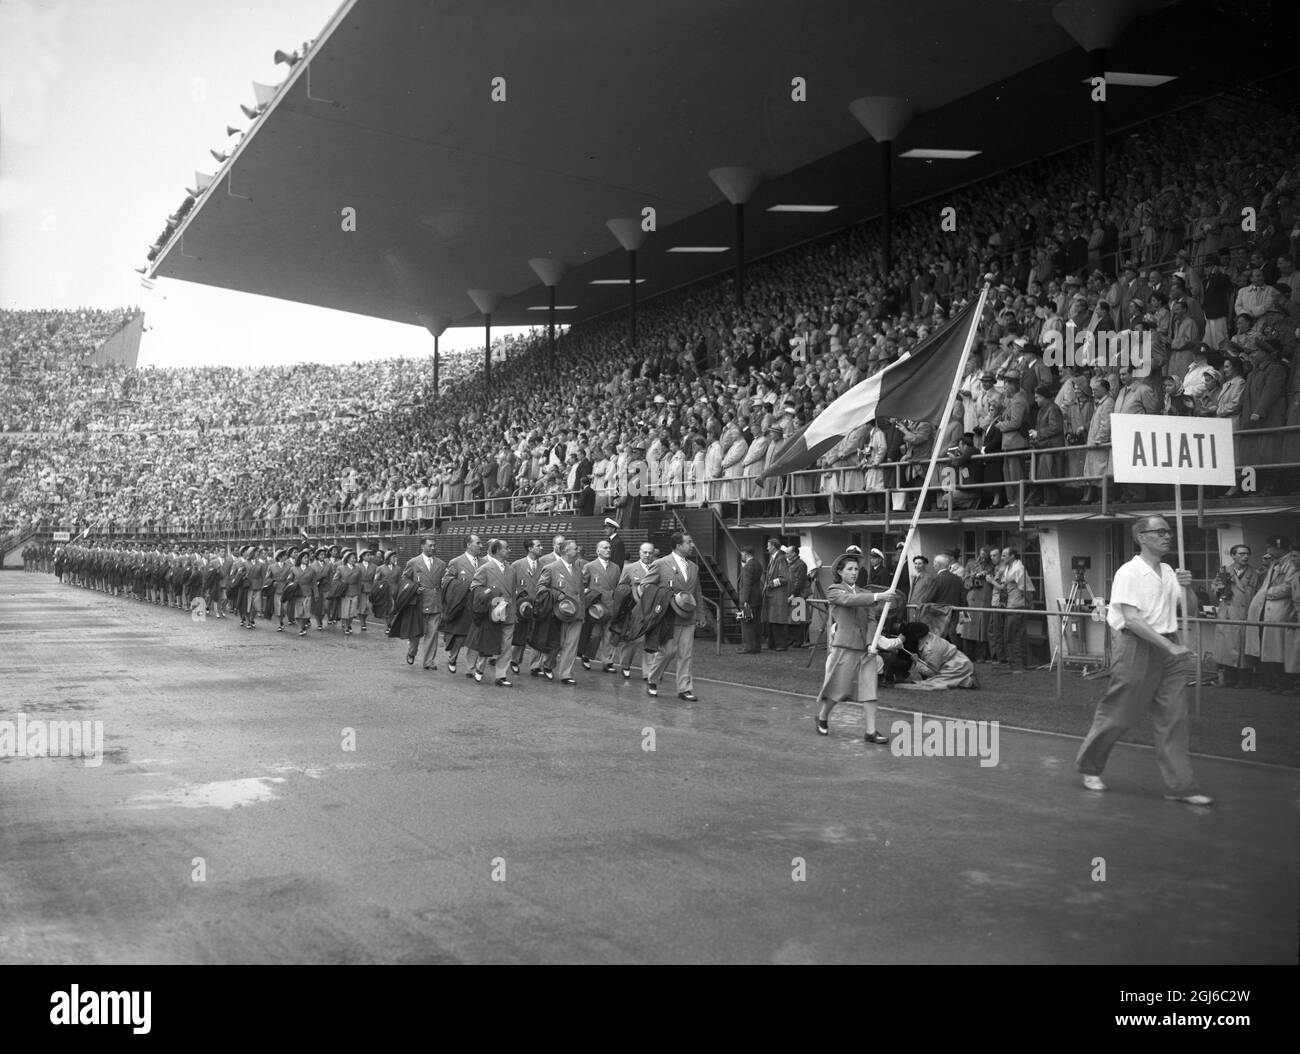 L'ÉQUIPE OLYMPIQUE ITALIENNE EN MARS DERNIER Helsinki : l'équipe olympique italienne d'athlètes qui marchent autour du stade ici à l'ouverture de la XVème Olympiade où près de 6,000 athlètes de 70 nations doivent participer. 20 juillet 1952 Banque D'Images